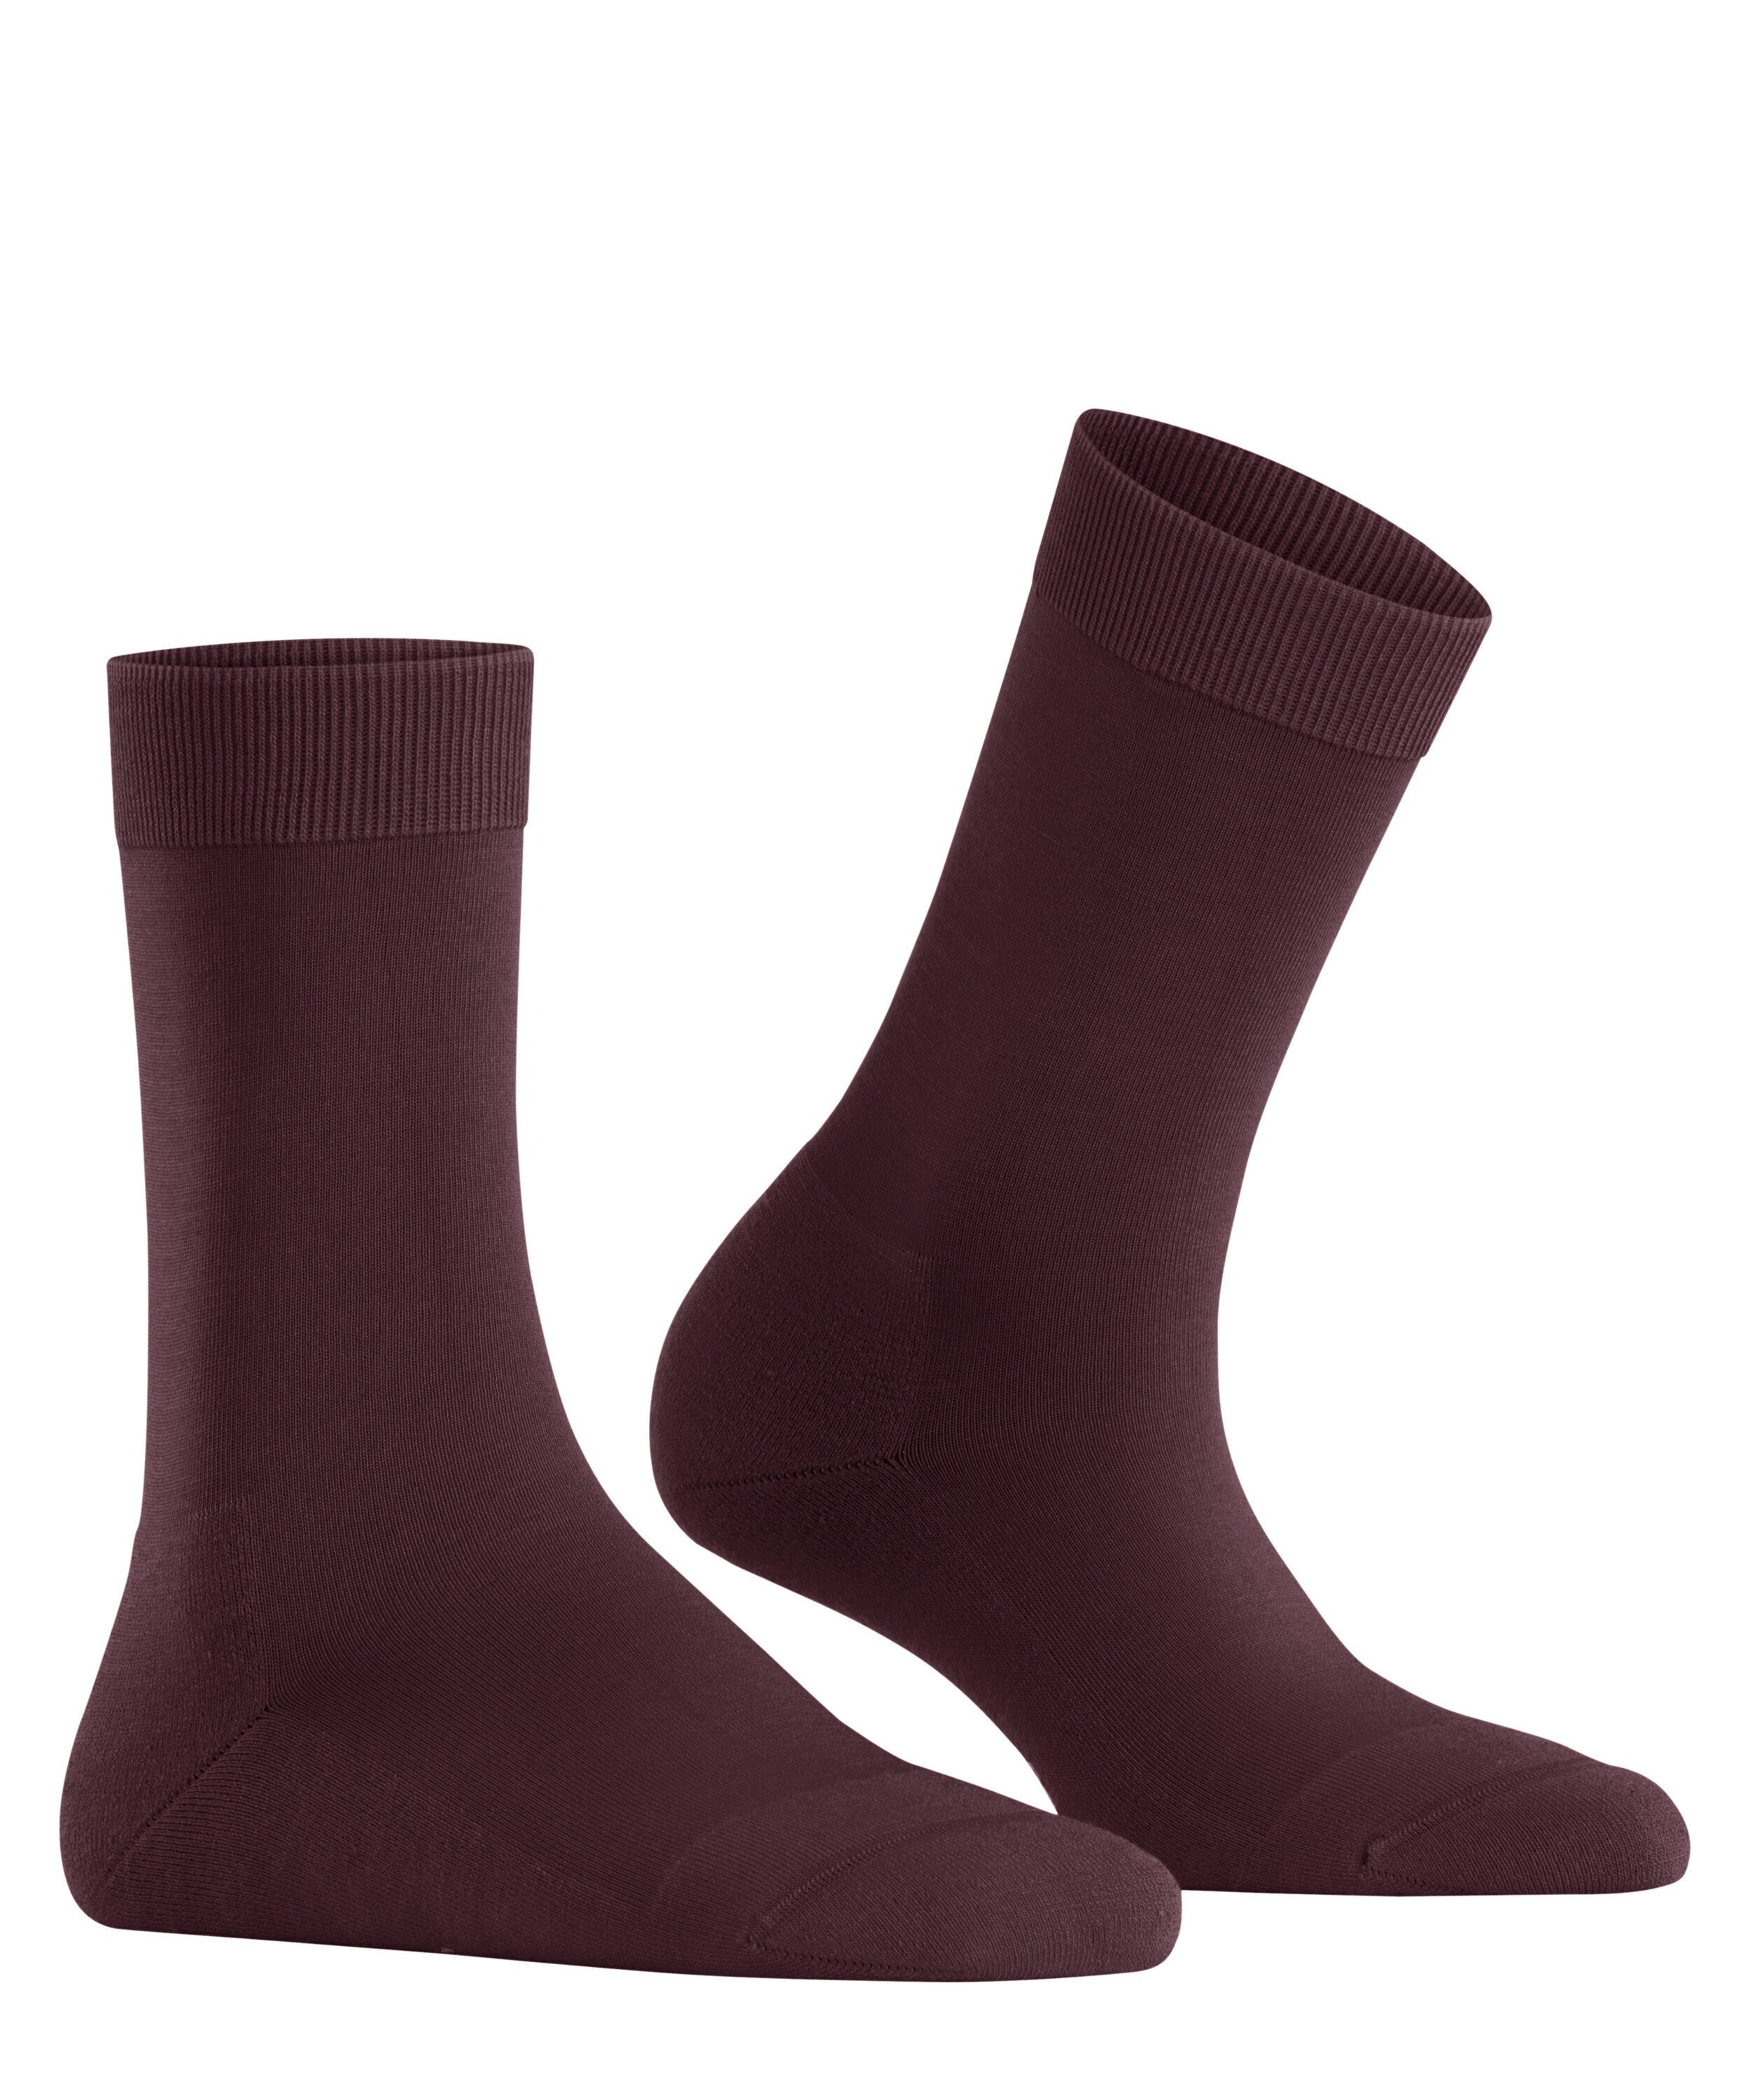 (1-Paar) Socken FALKE barolo (8596) ClimaWool